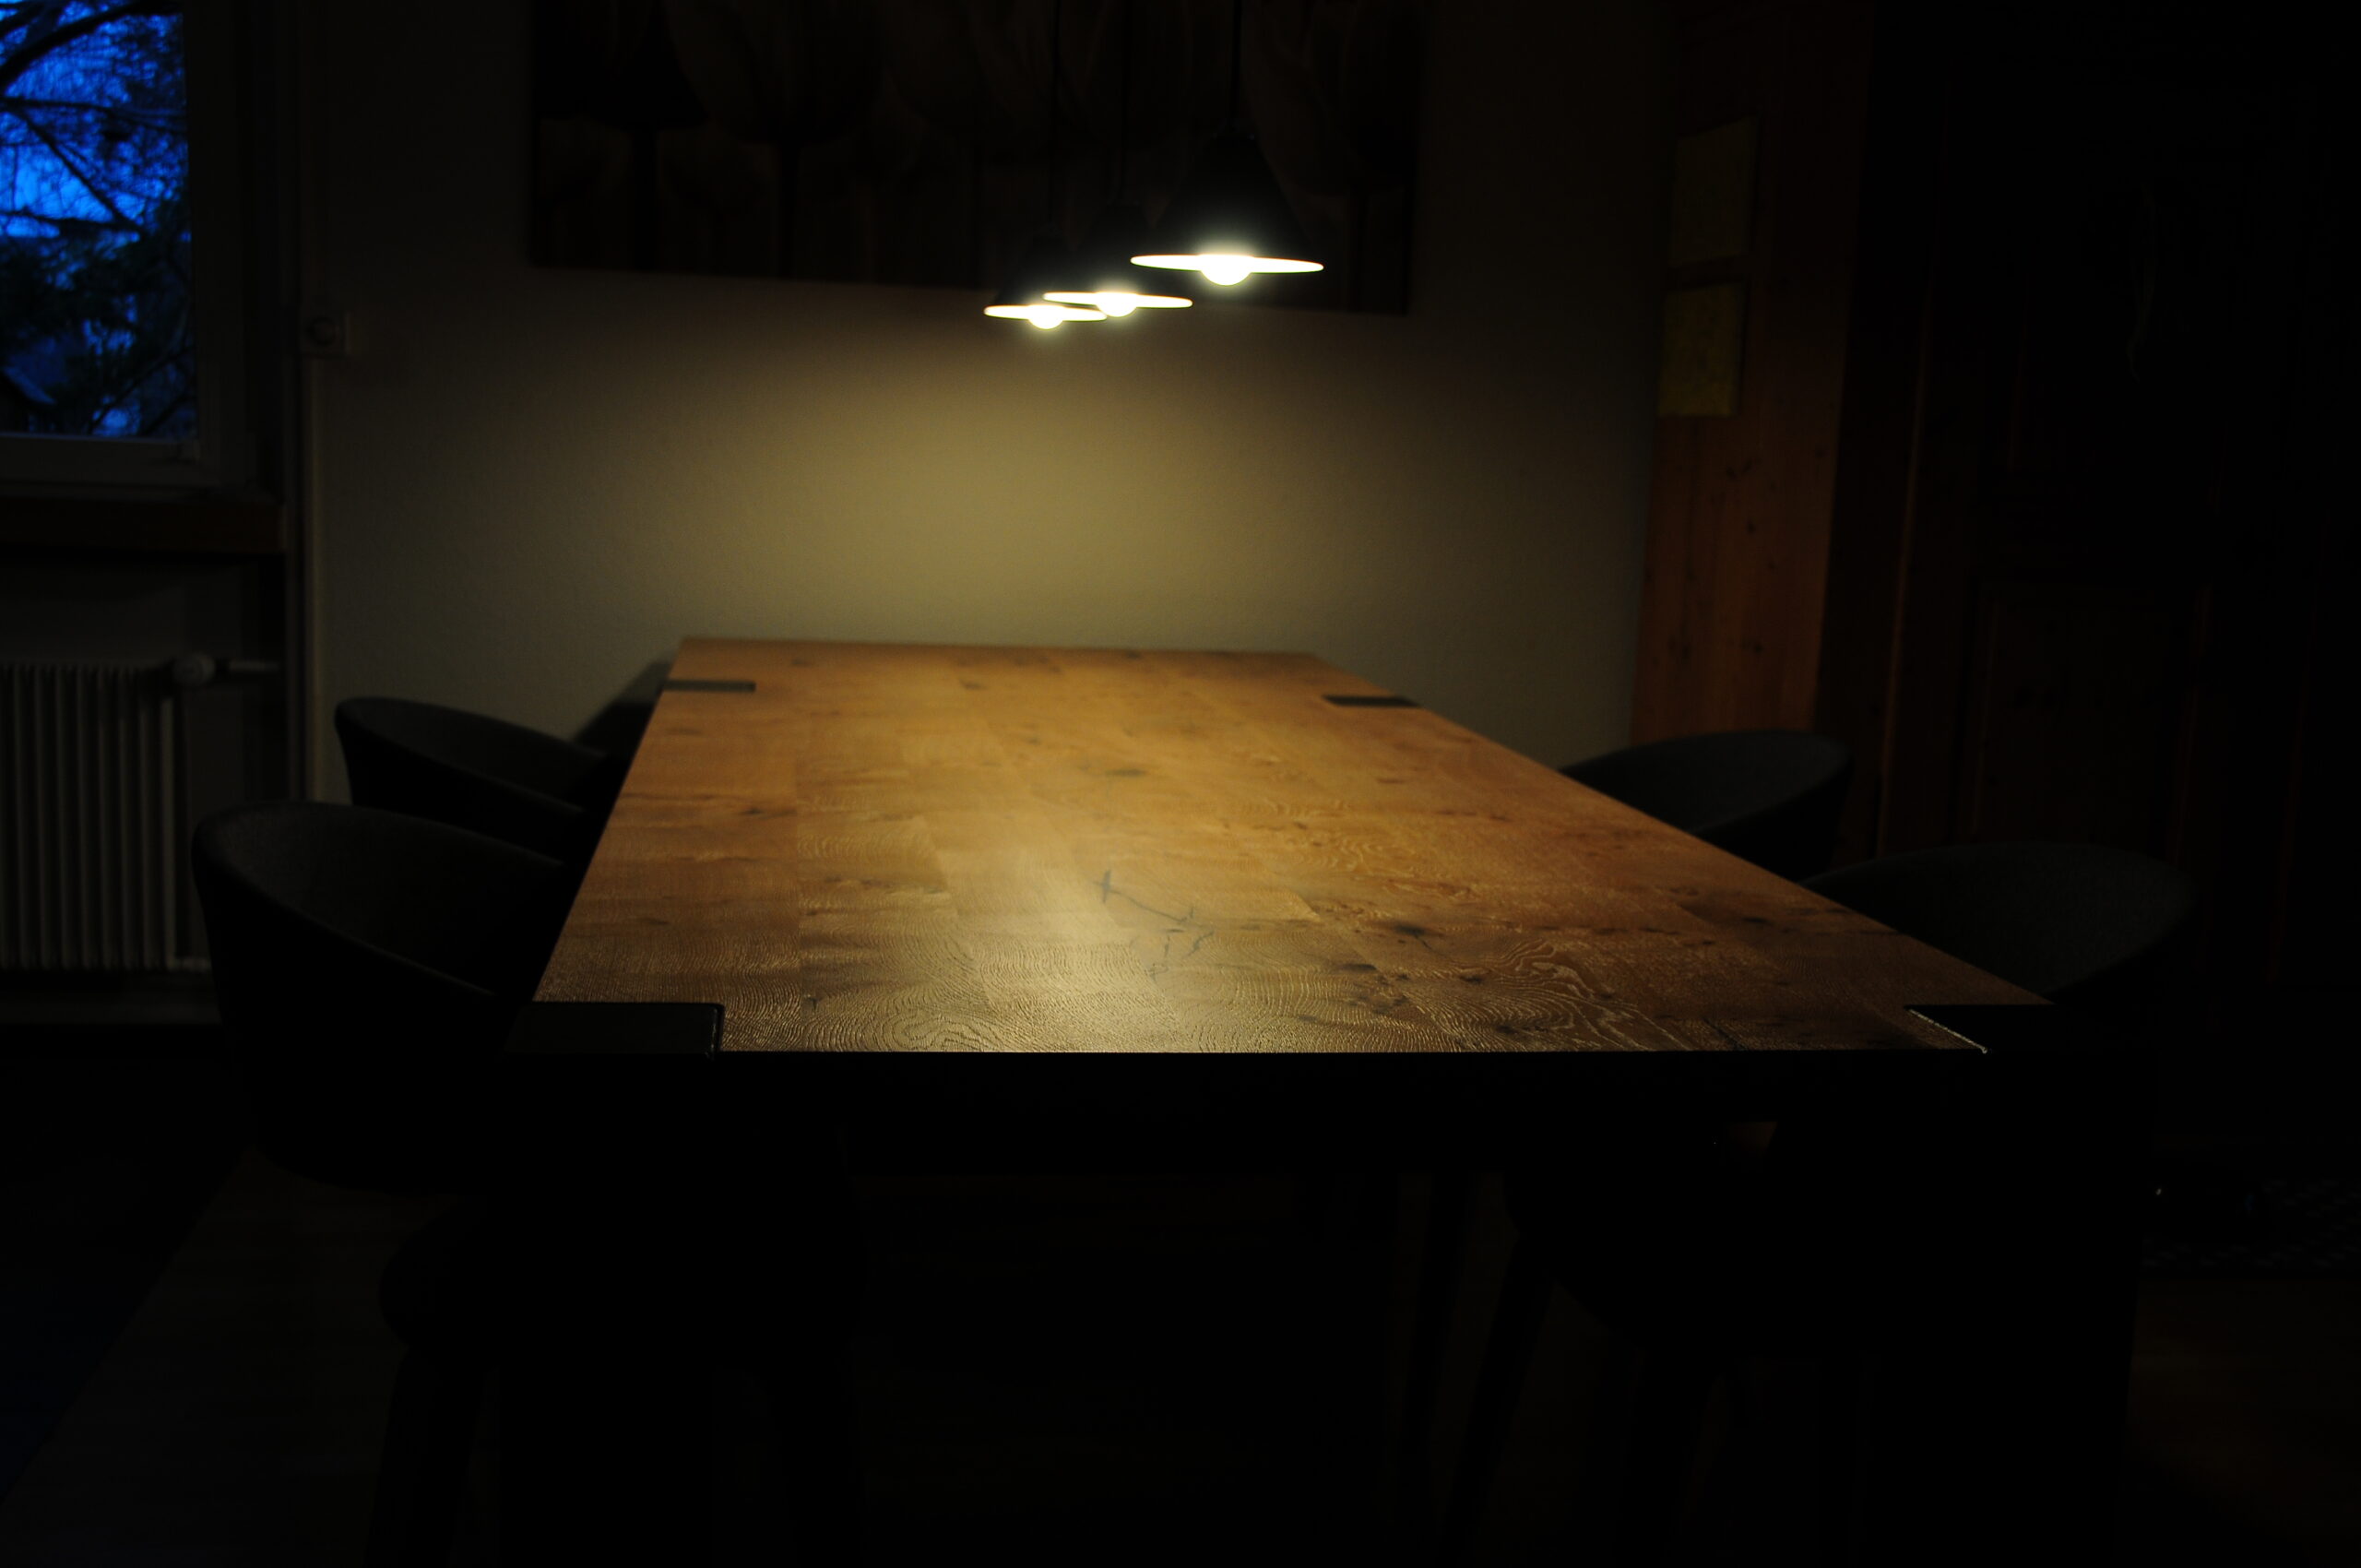 Tisch aus Massivholz